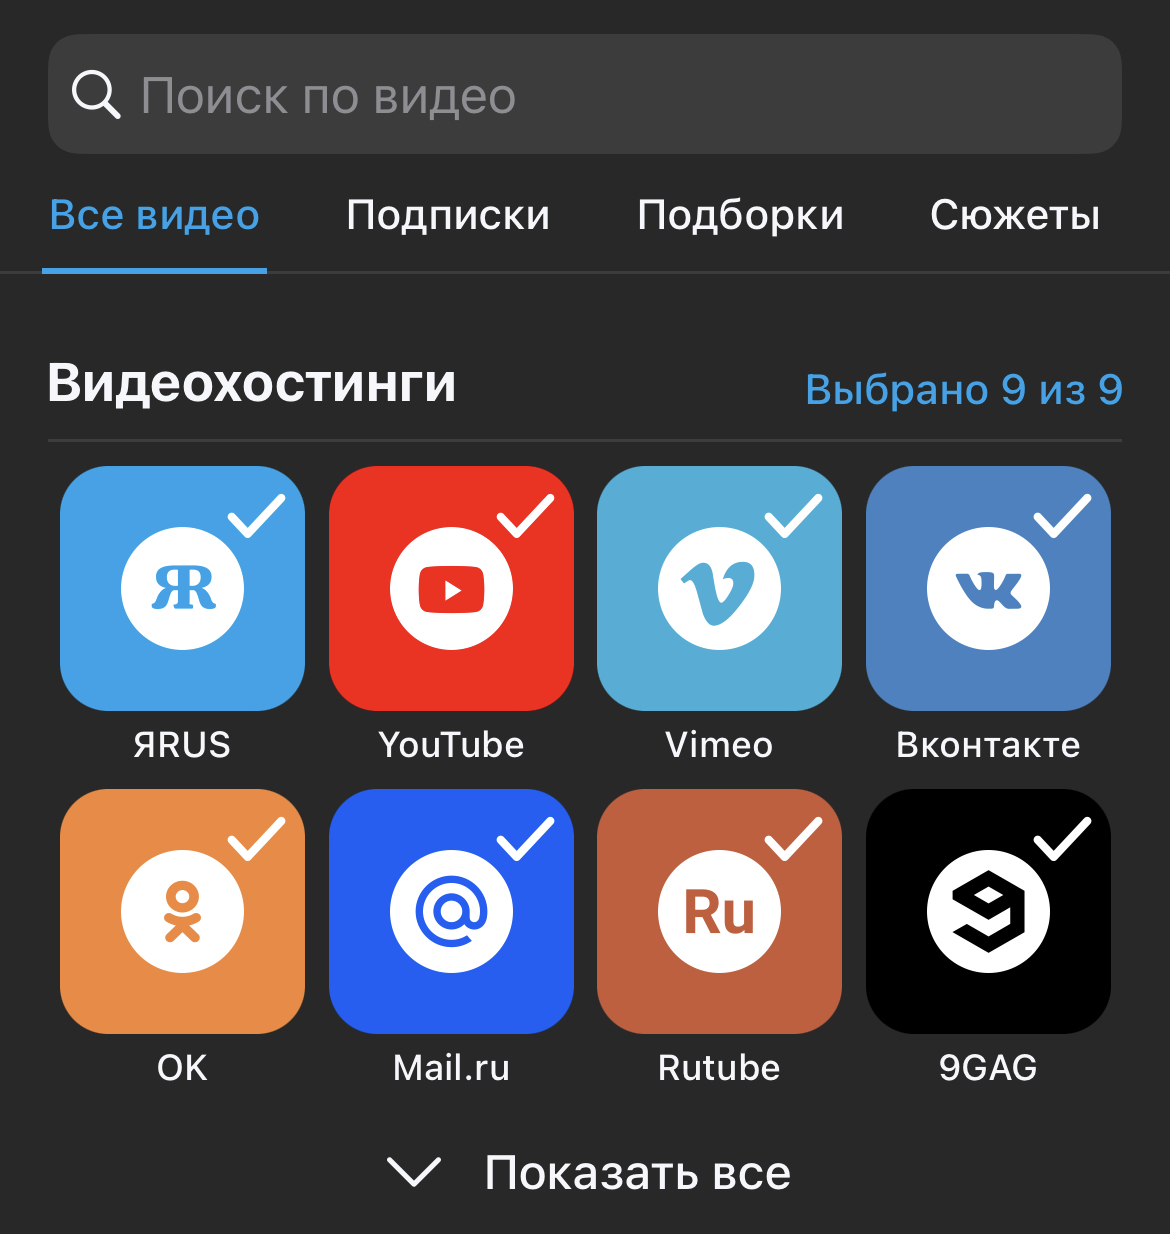 3 российских сервиса, которые могут заменить Instagram в России после блокировки